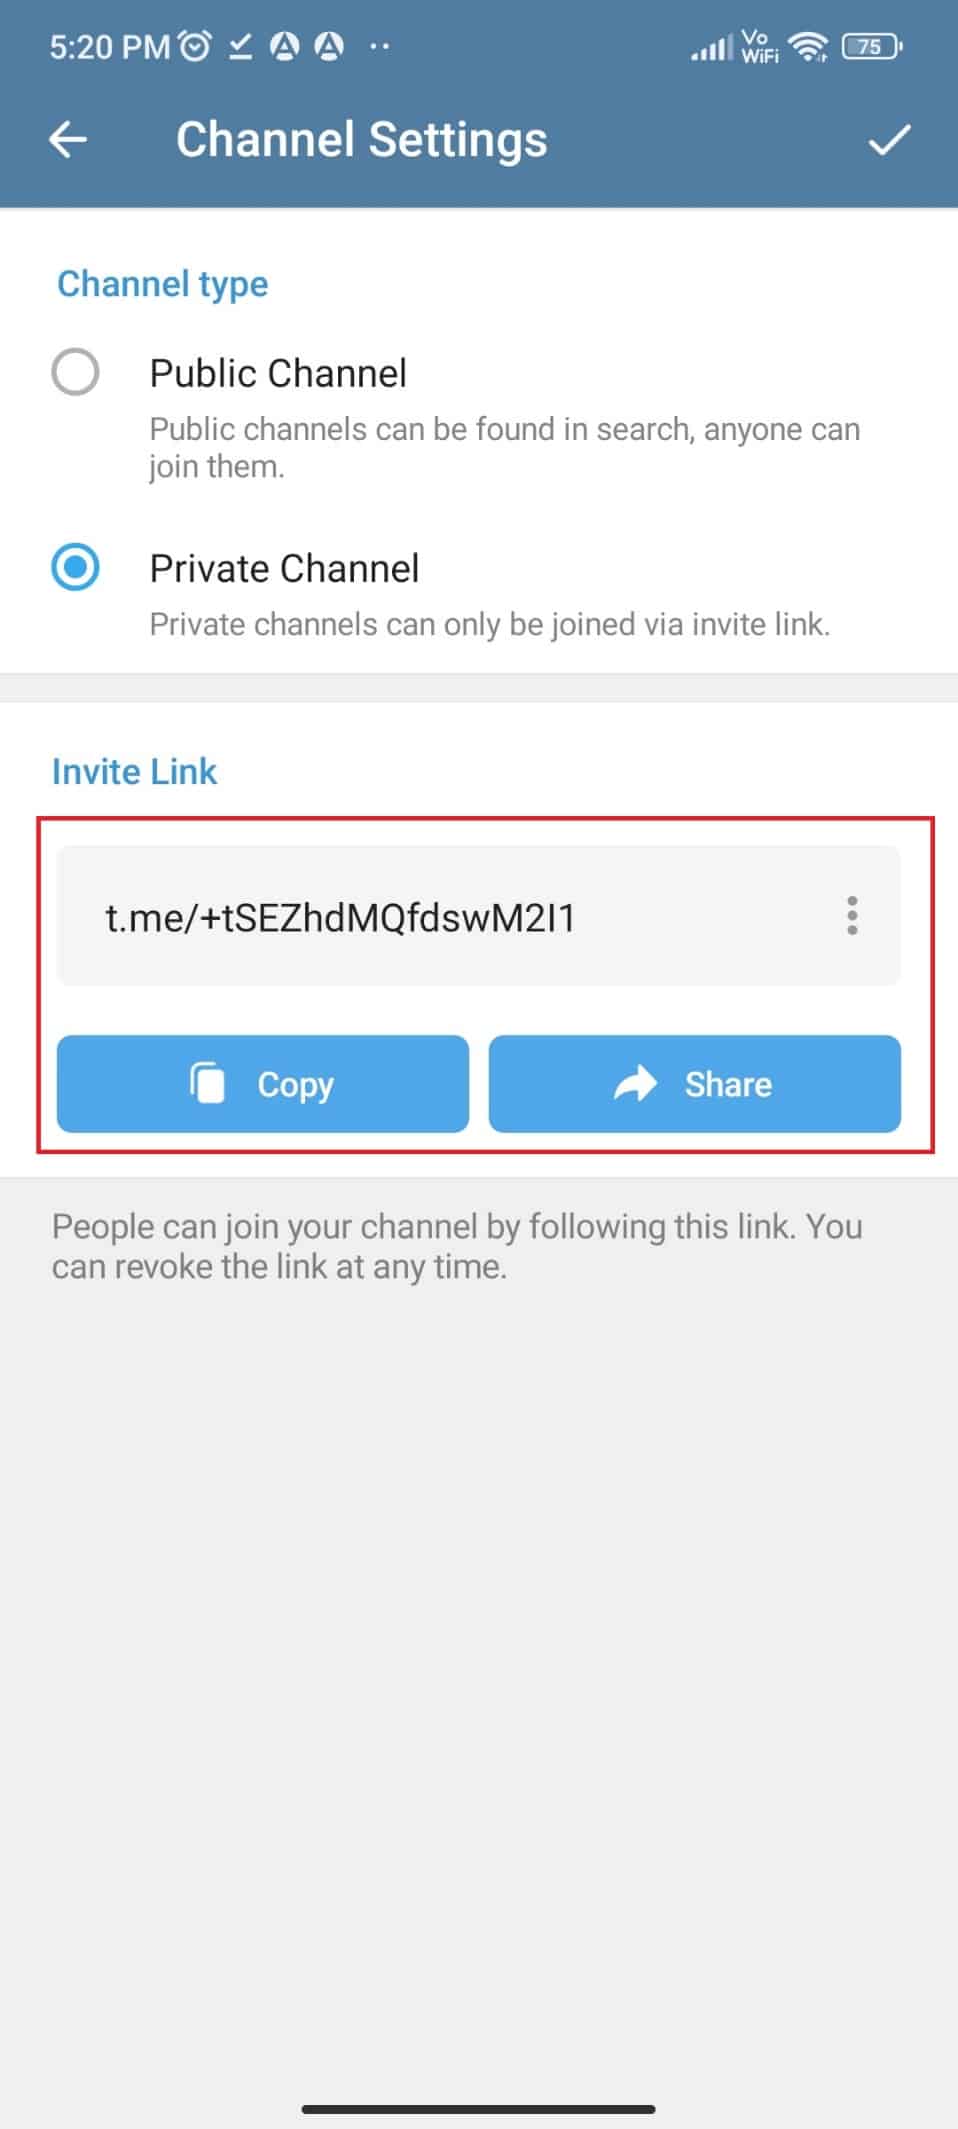 Copia o condividi il link fornito per invitare gli utenti di Telegram a unirsi al canale